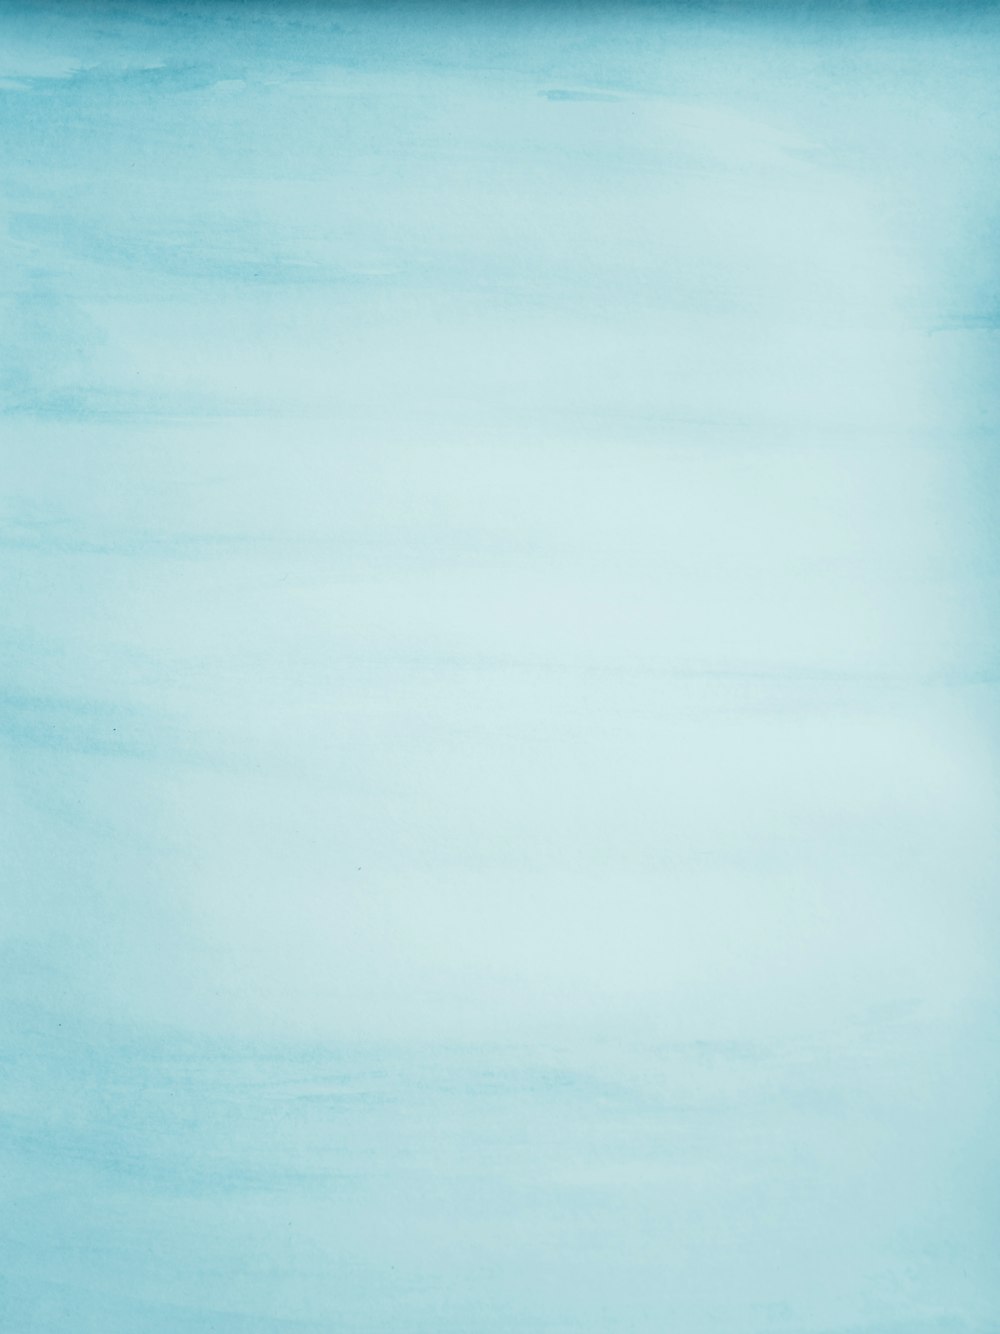 uno sfondo blu con un bordo bianco